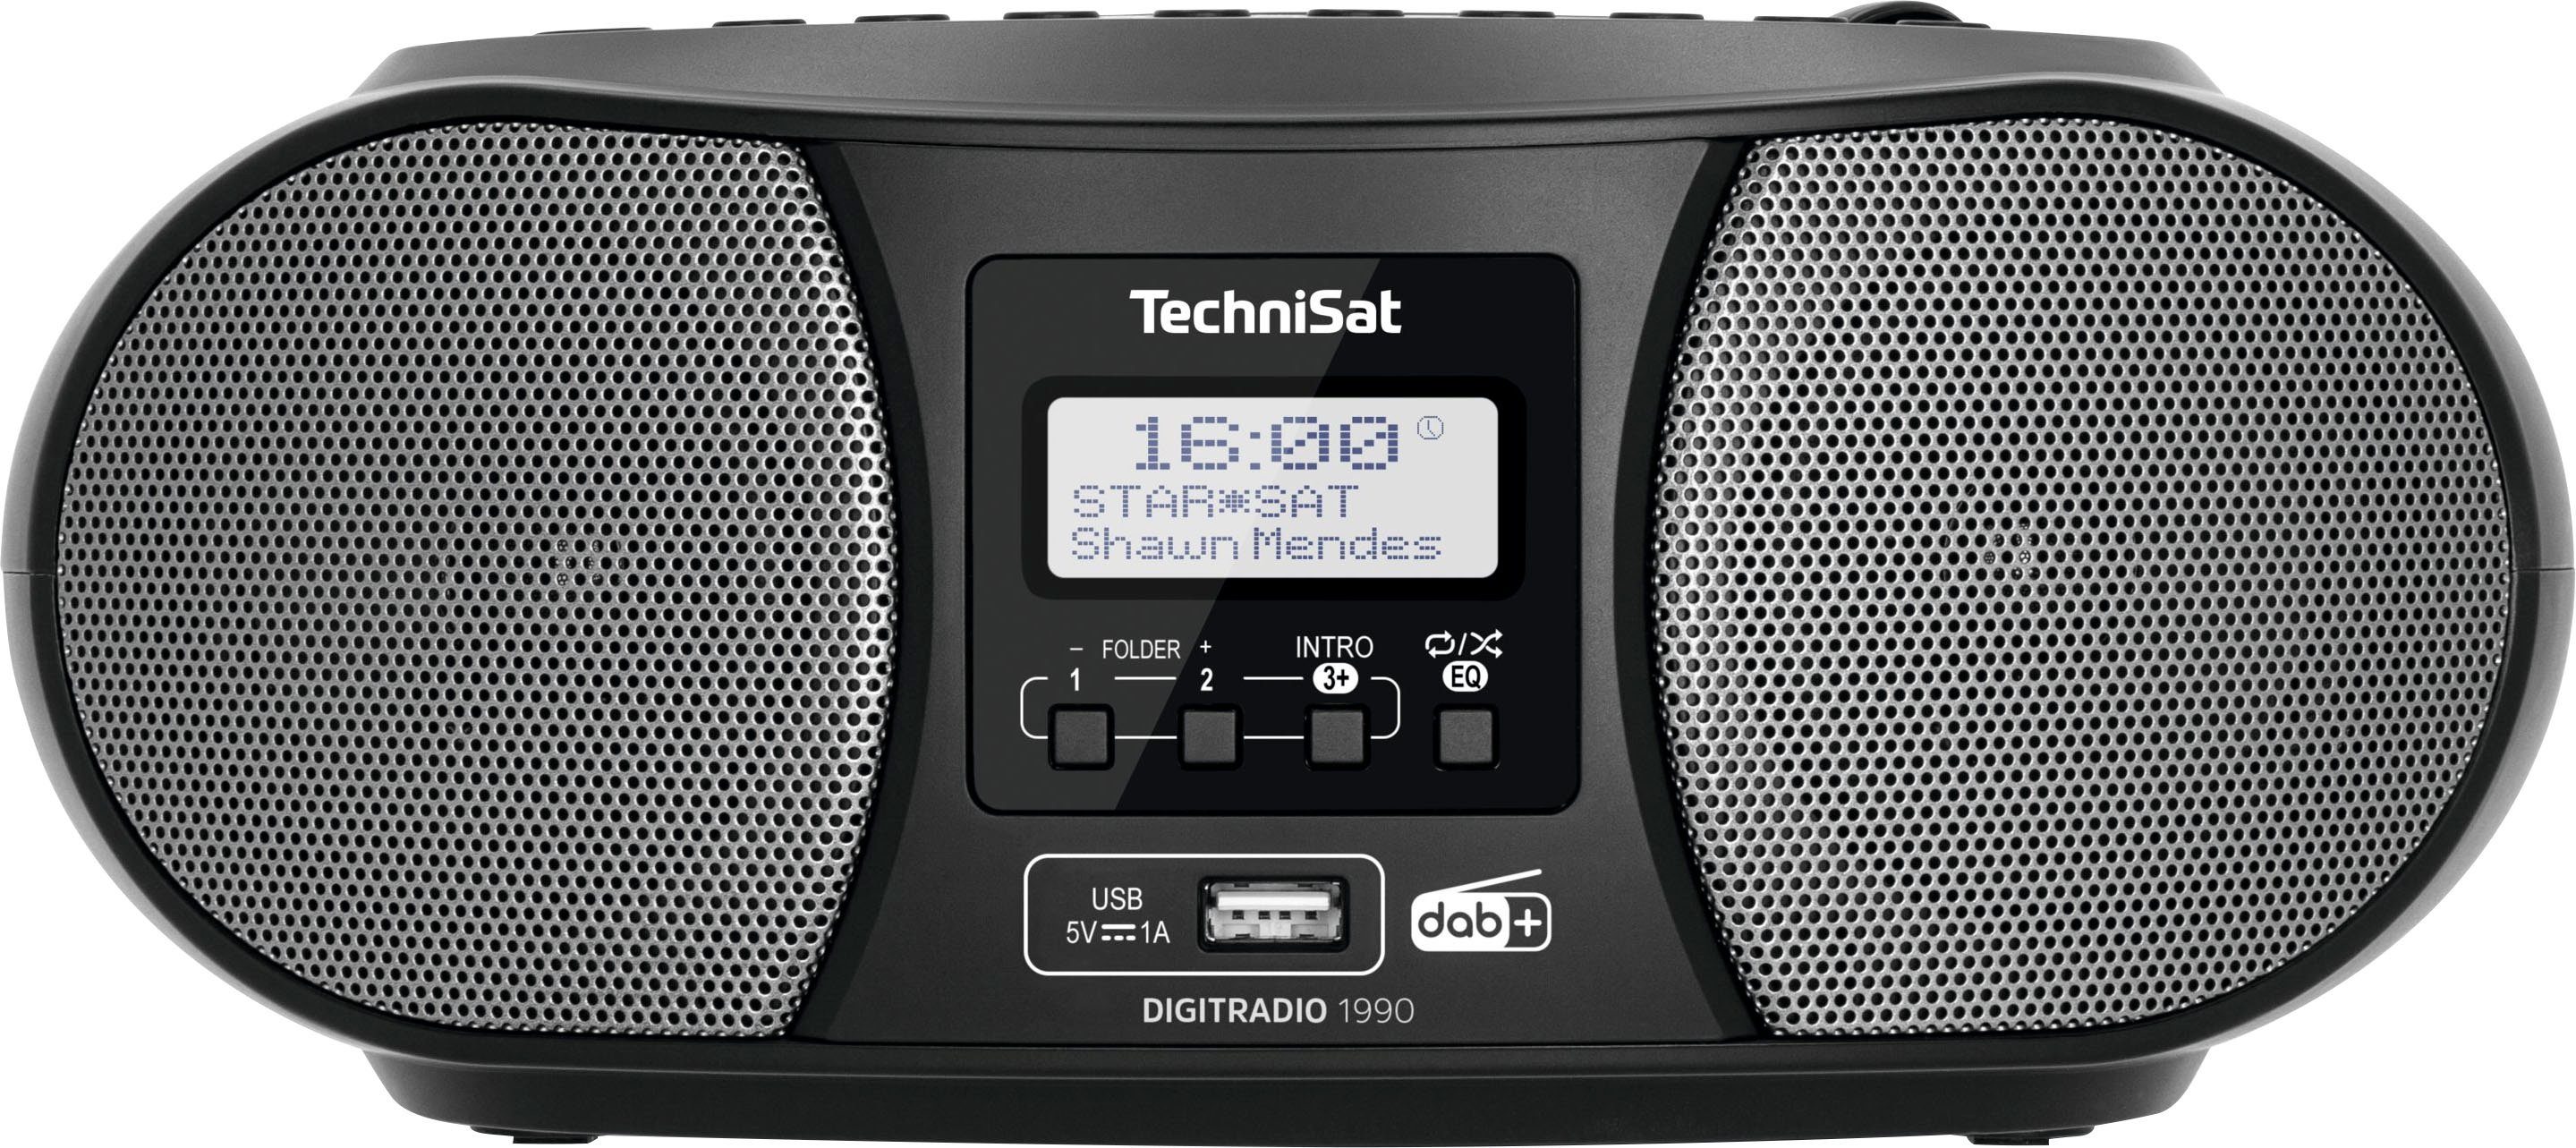 Bluetooth, TechniSat (Digitalradio Batteriebetrieb UKW, Stereo- DAB+, Boombox CD-Player, 1990 (DAB), USB, schwarz FM-Tuner, mit möglich) Digitradio